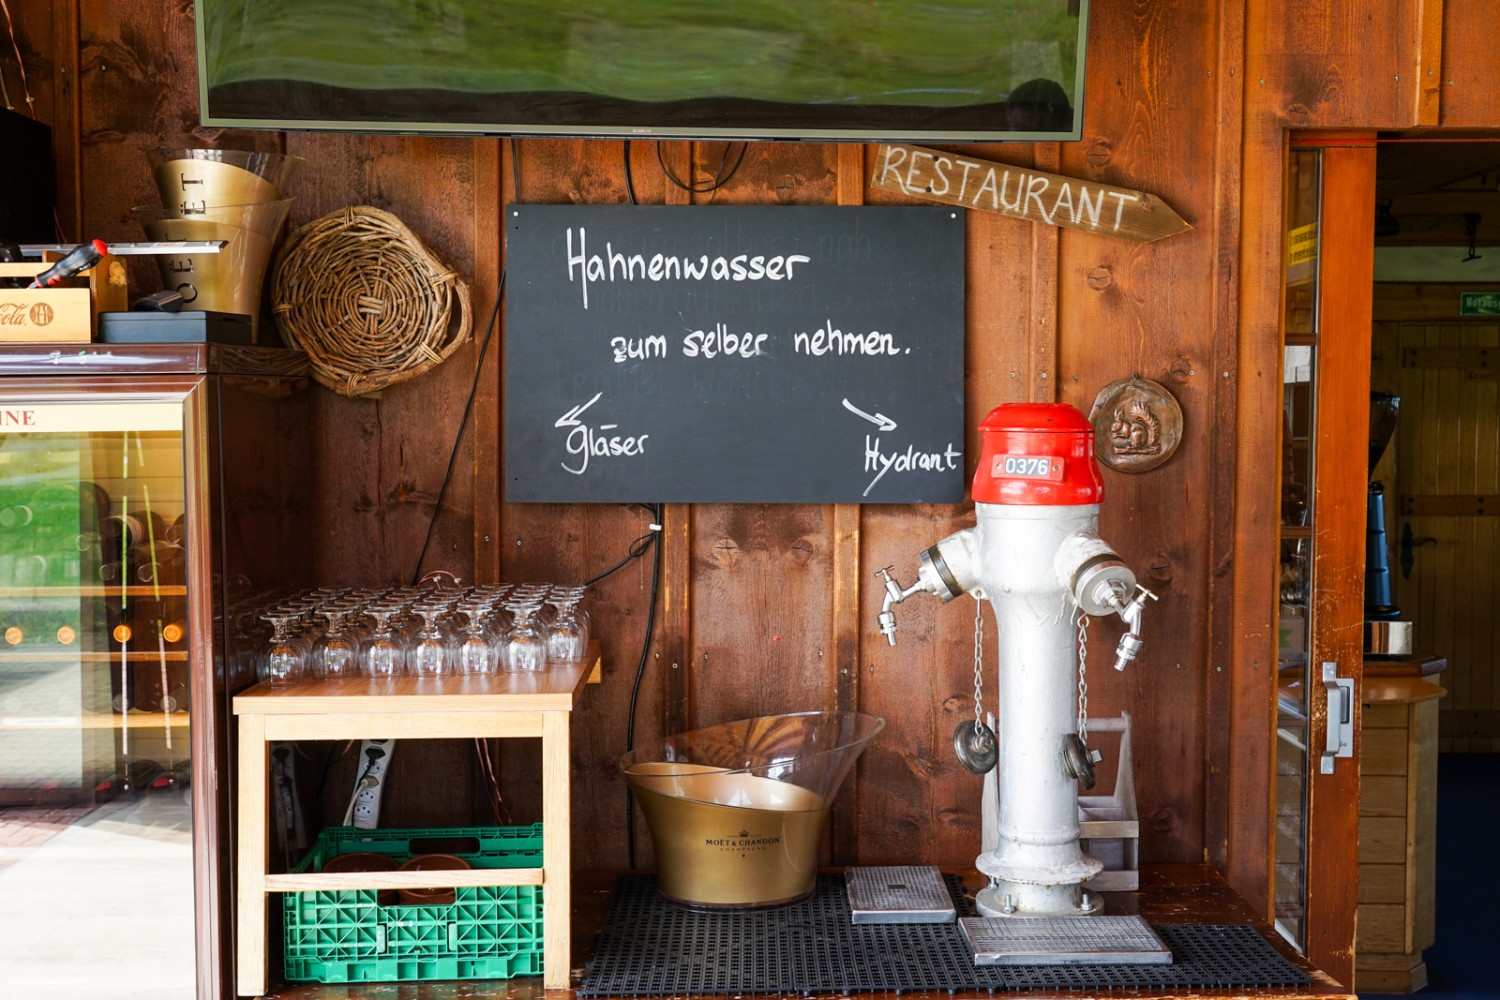 Au restaurant de montagne Laucheren, on se sert de l’eau soi-même. Photo: Reto Wissmann